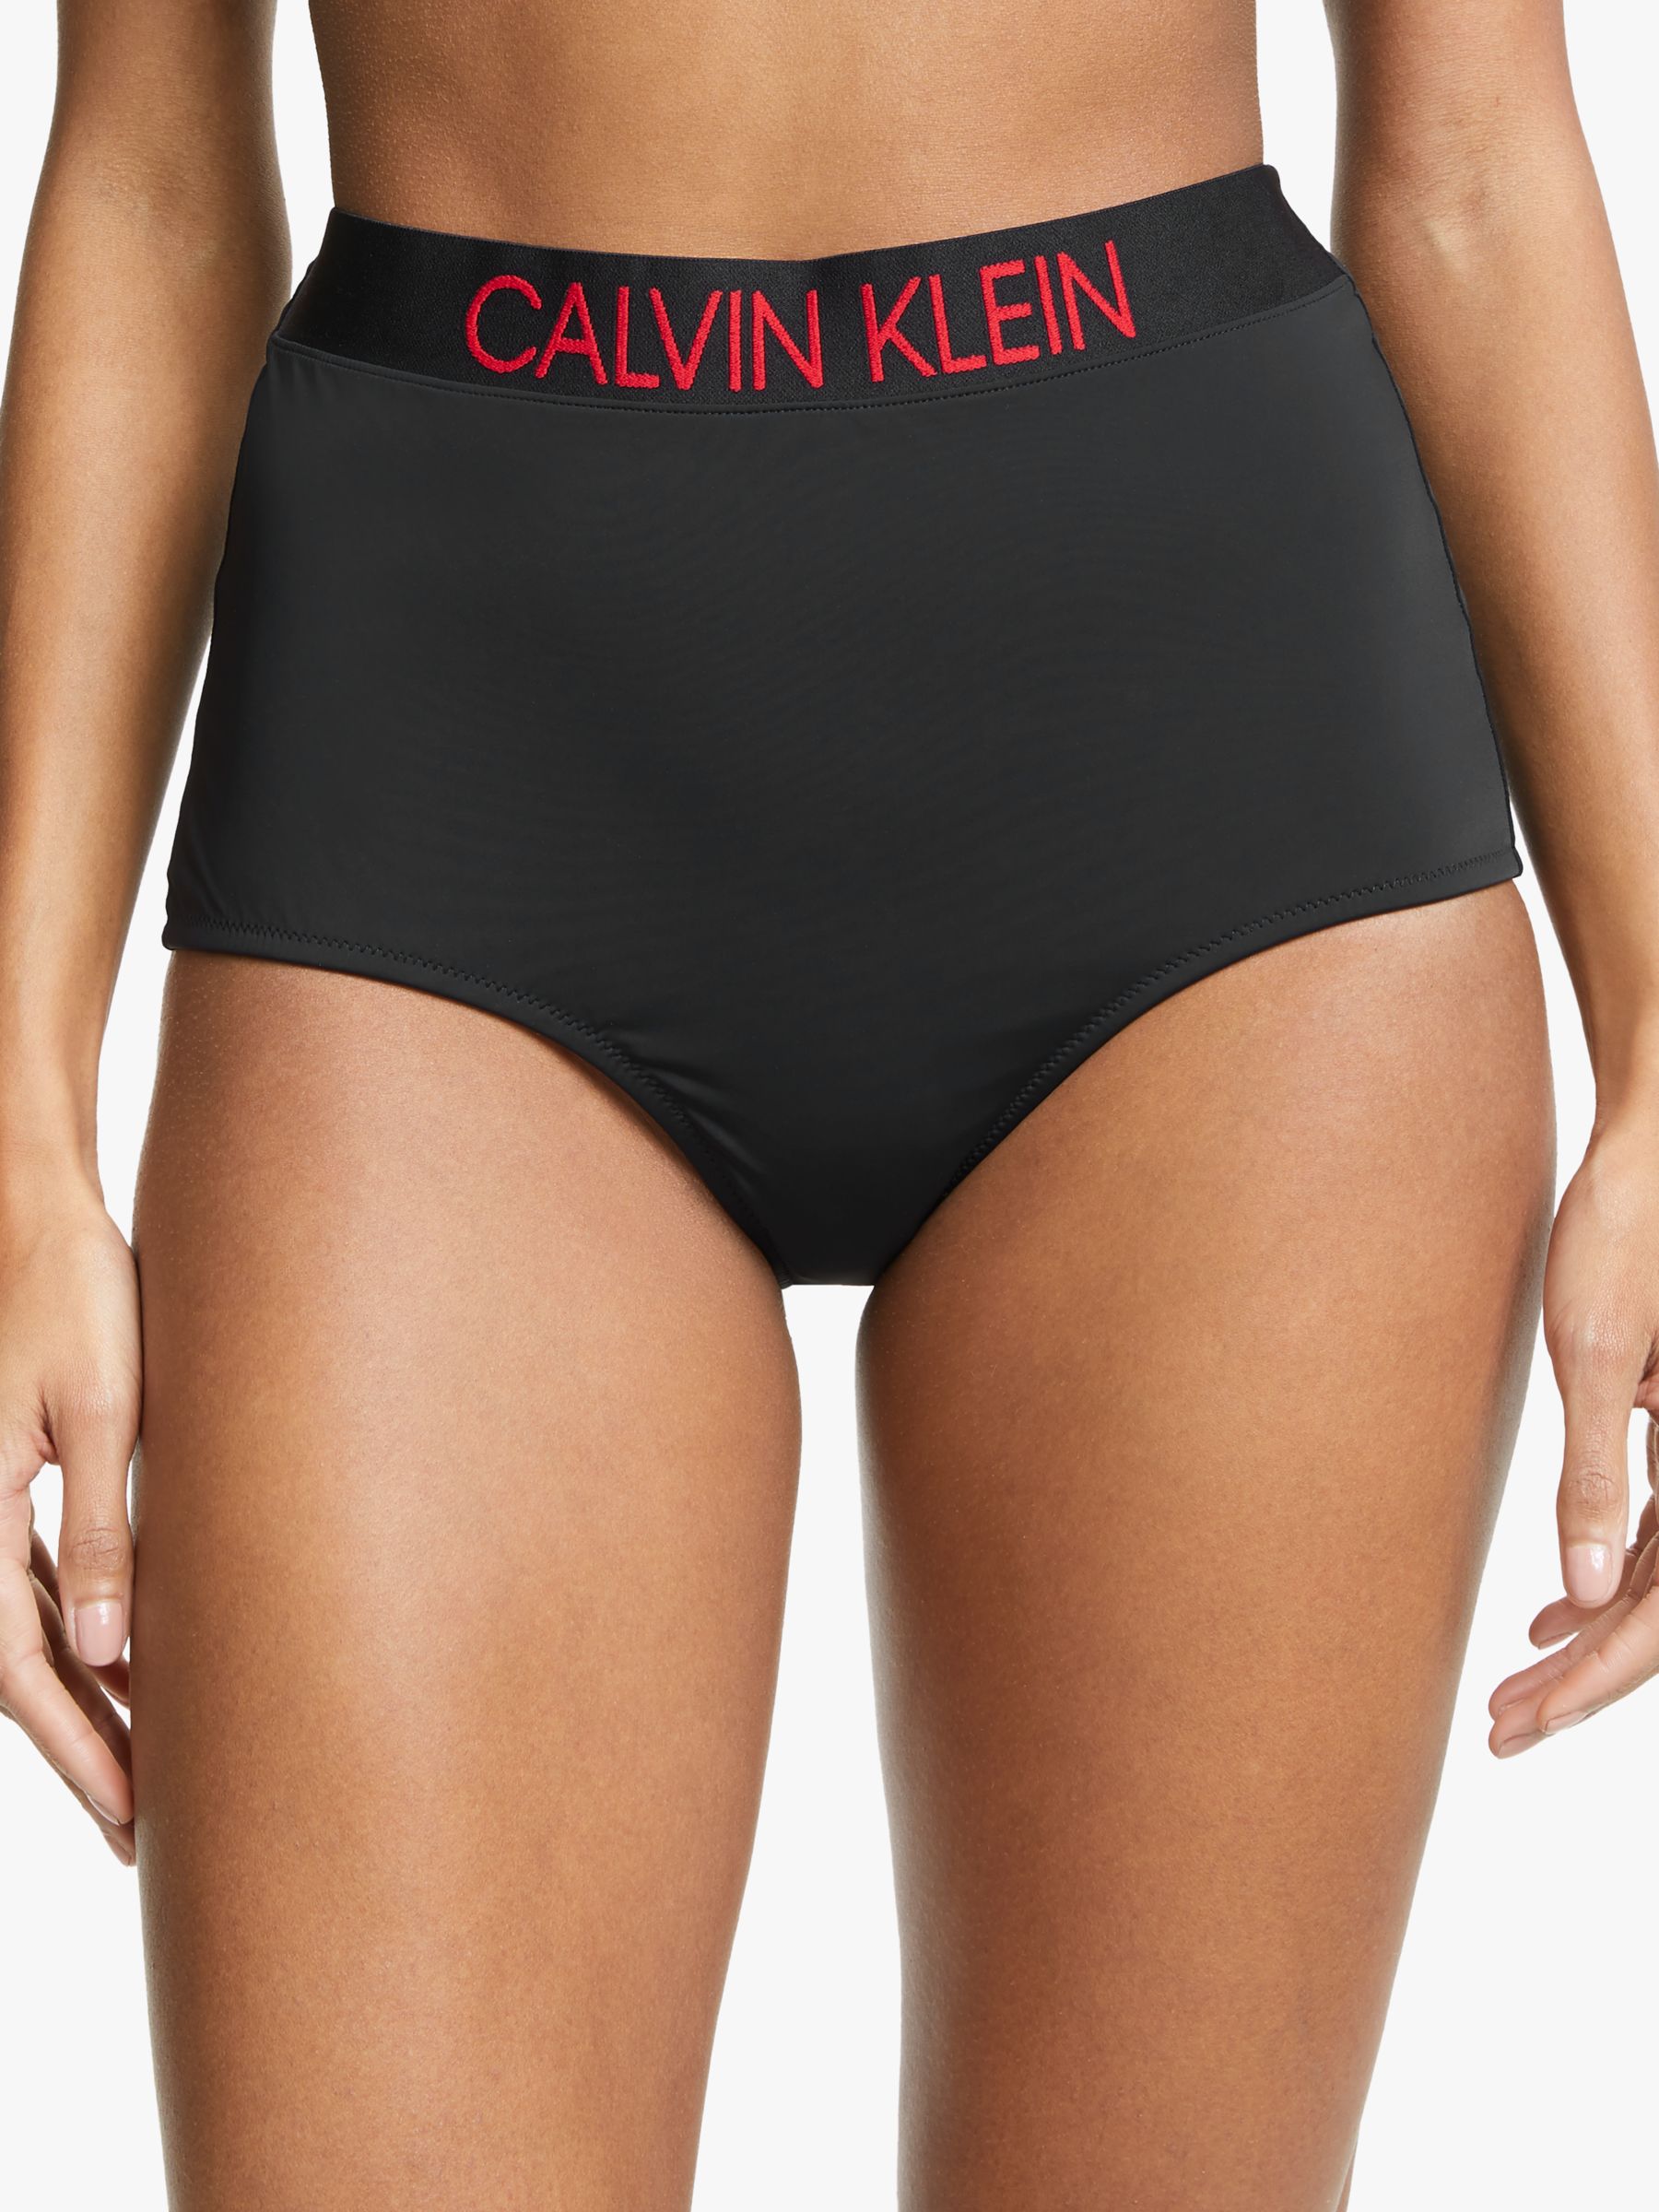 Calvin Klein High Waist Bikini Bottoms